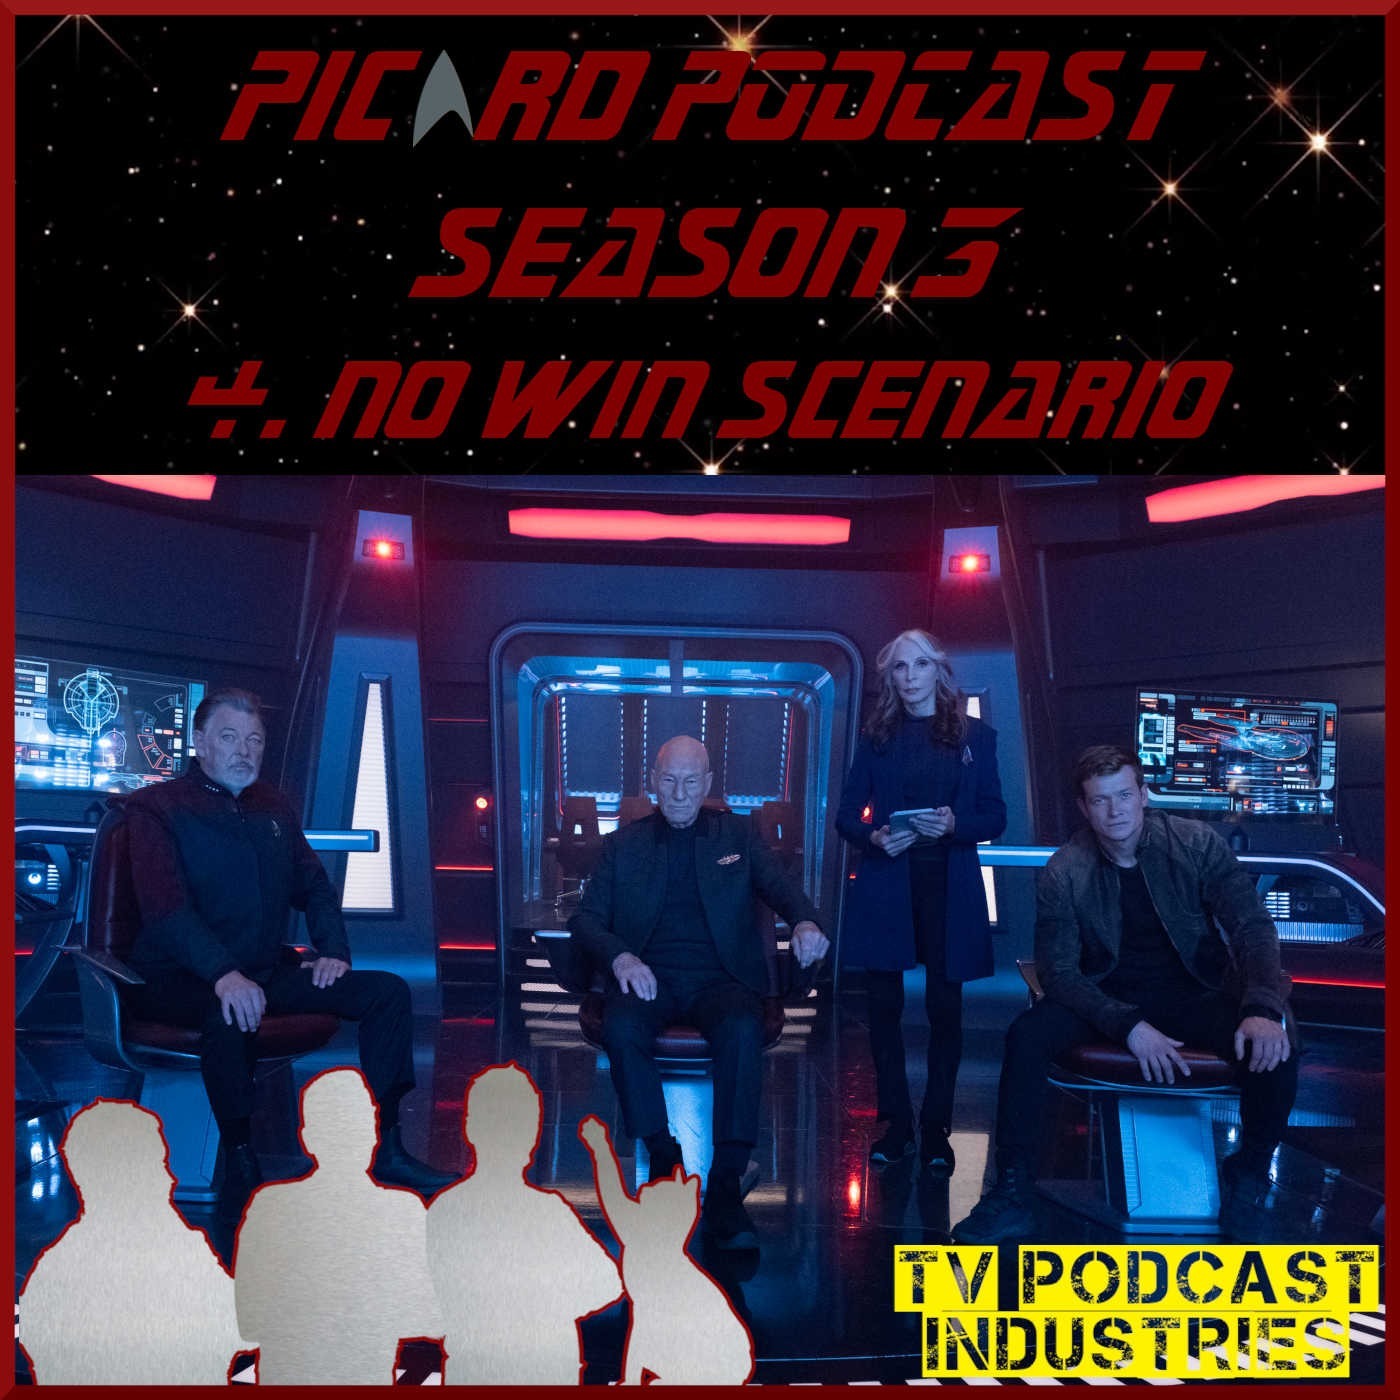 Star Trek Picard 304 ”No Win Scenario” review